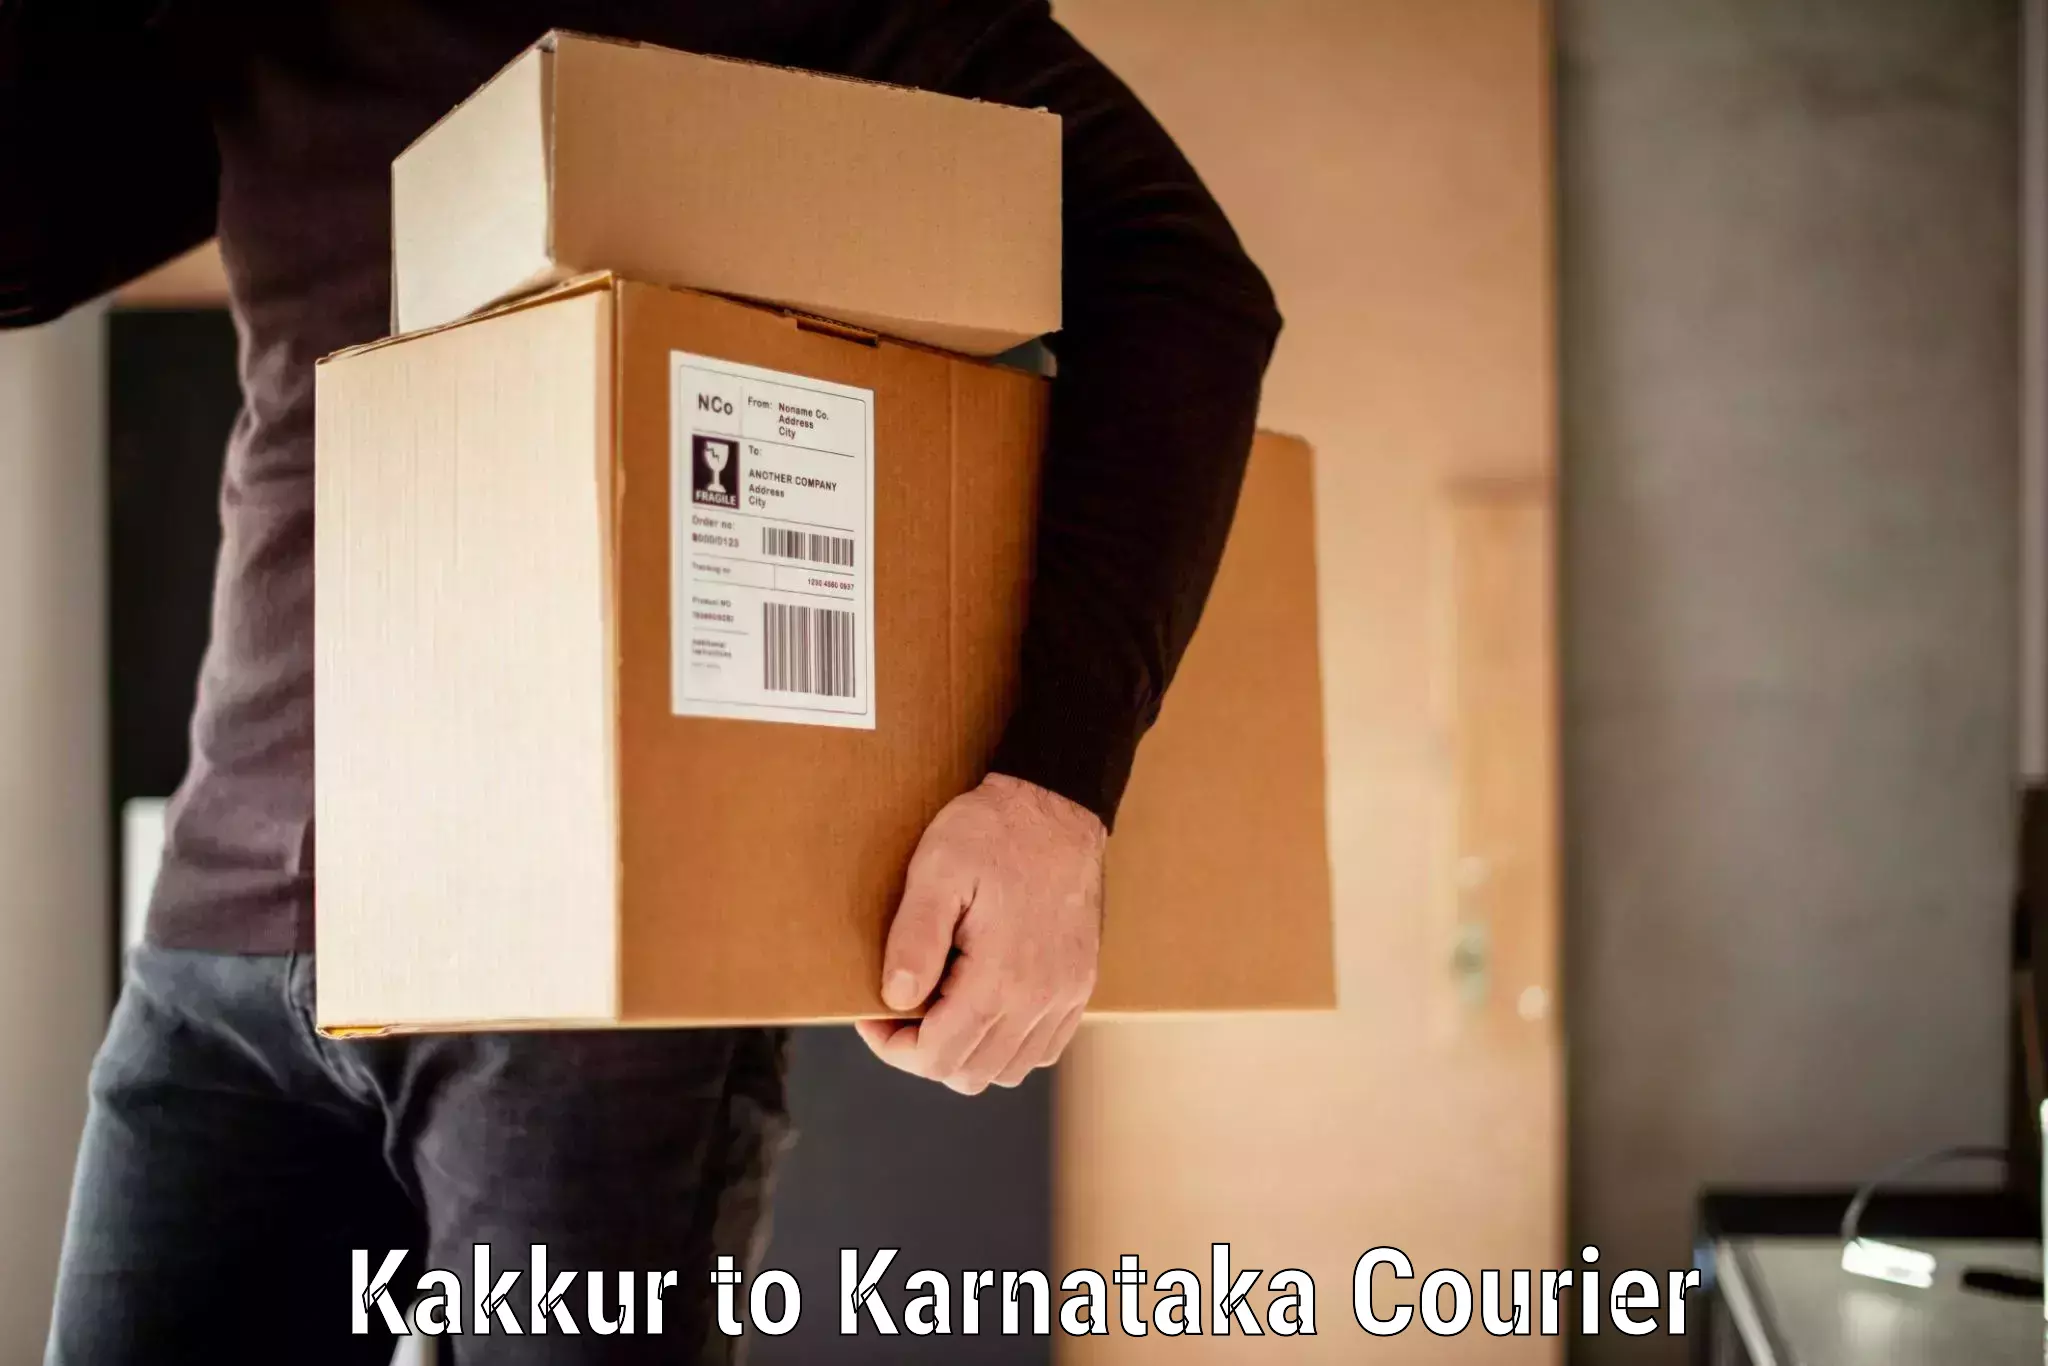 Baggage shipping service Kakkur to Karnataka